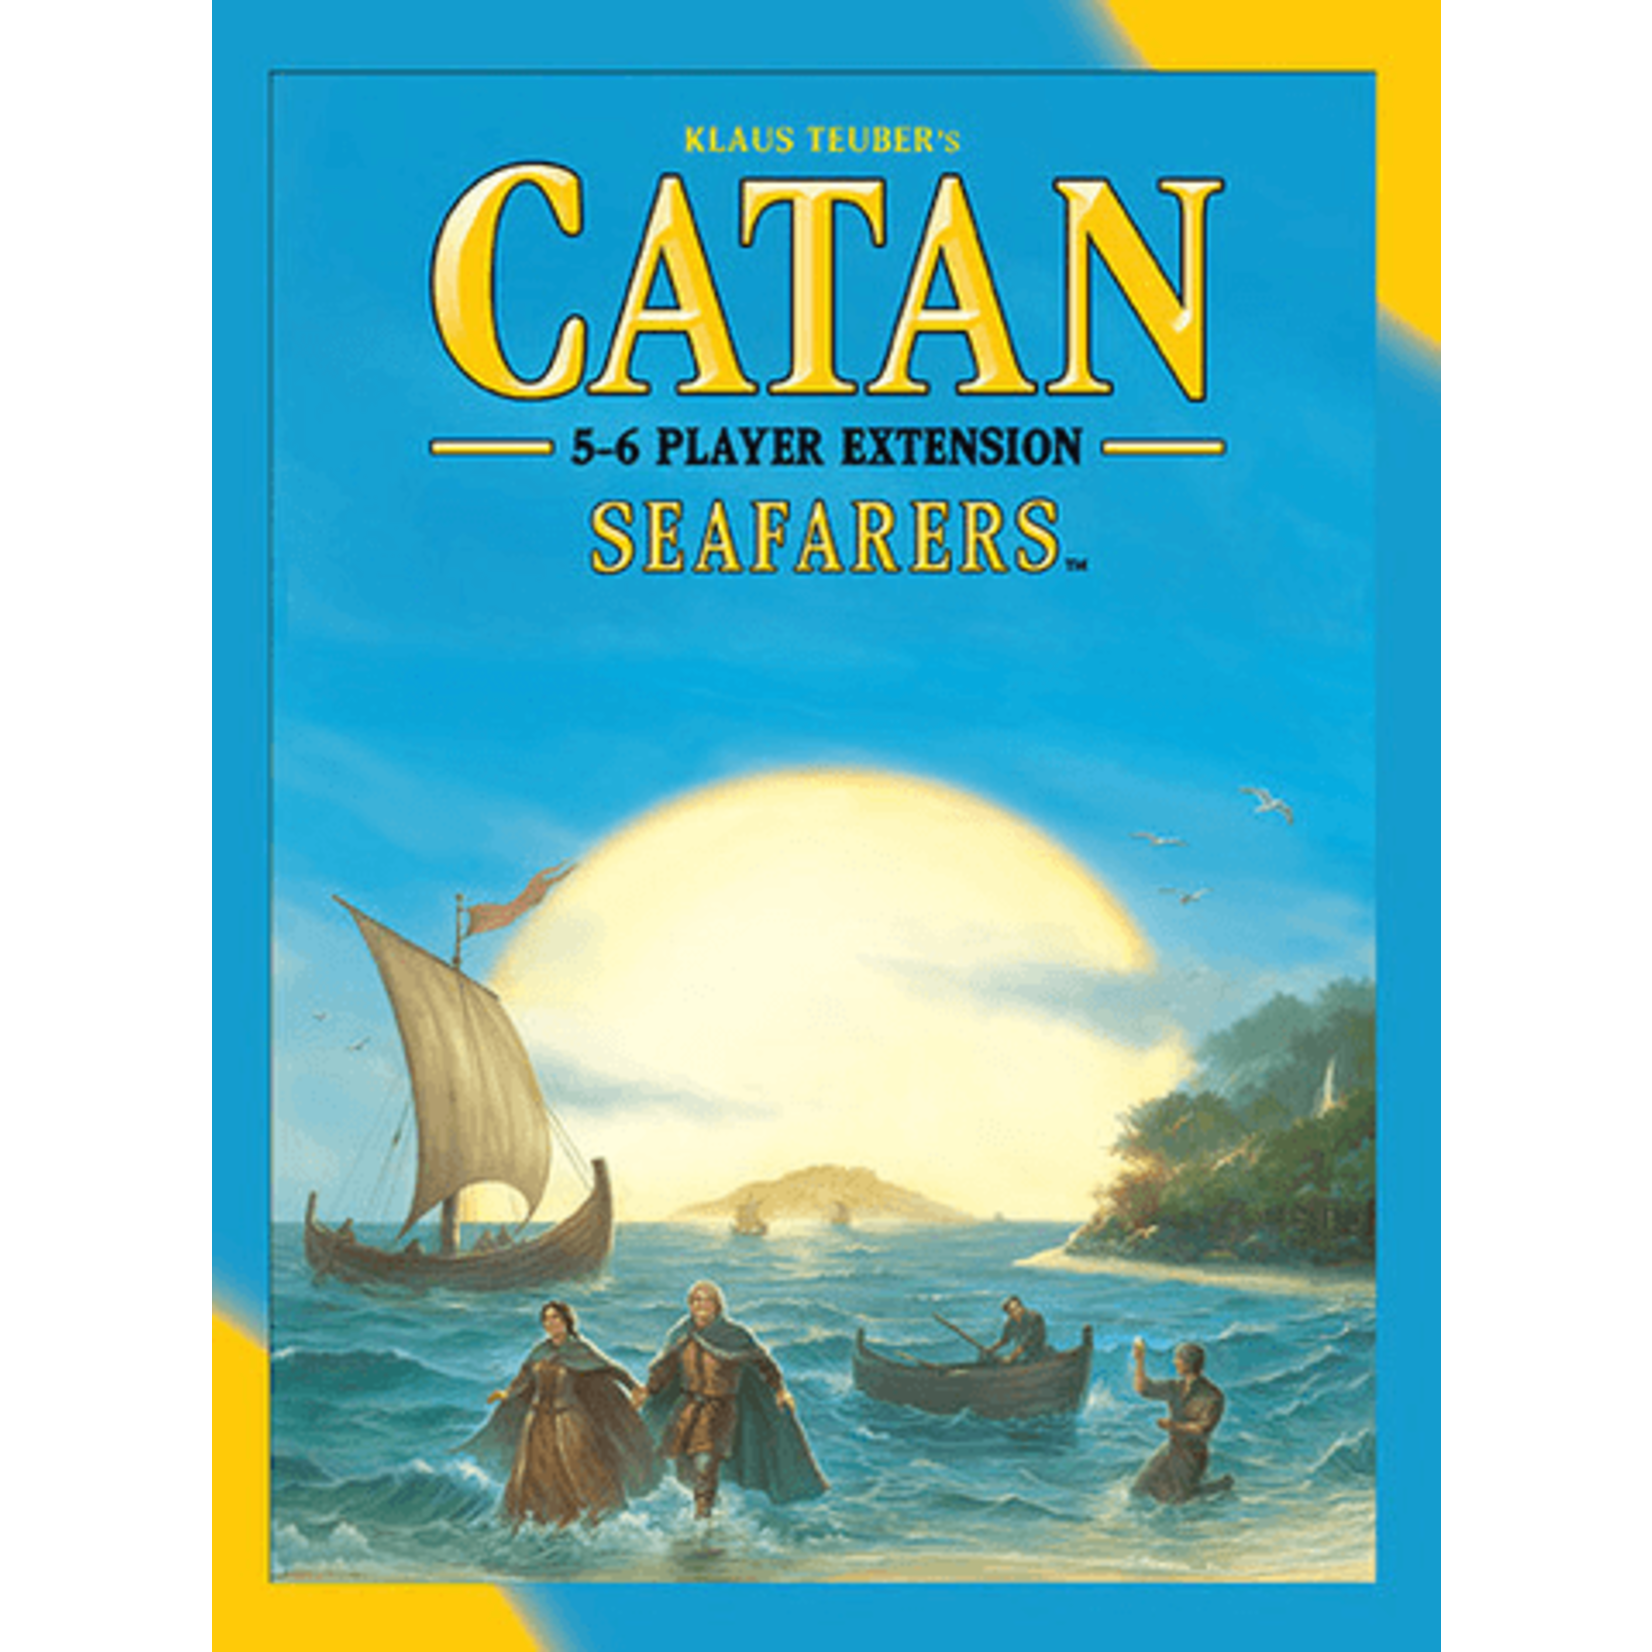 Catan Studio Catan: Seafarers 5-6 Player